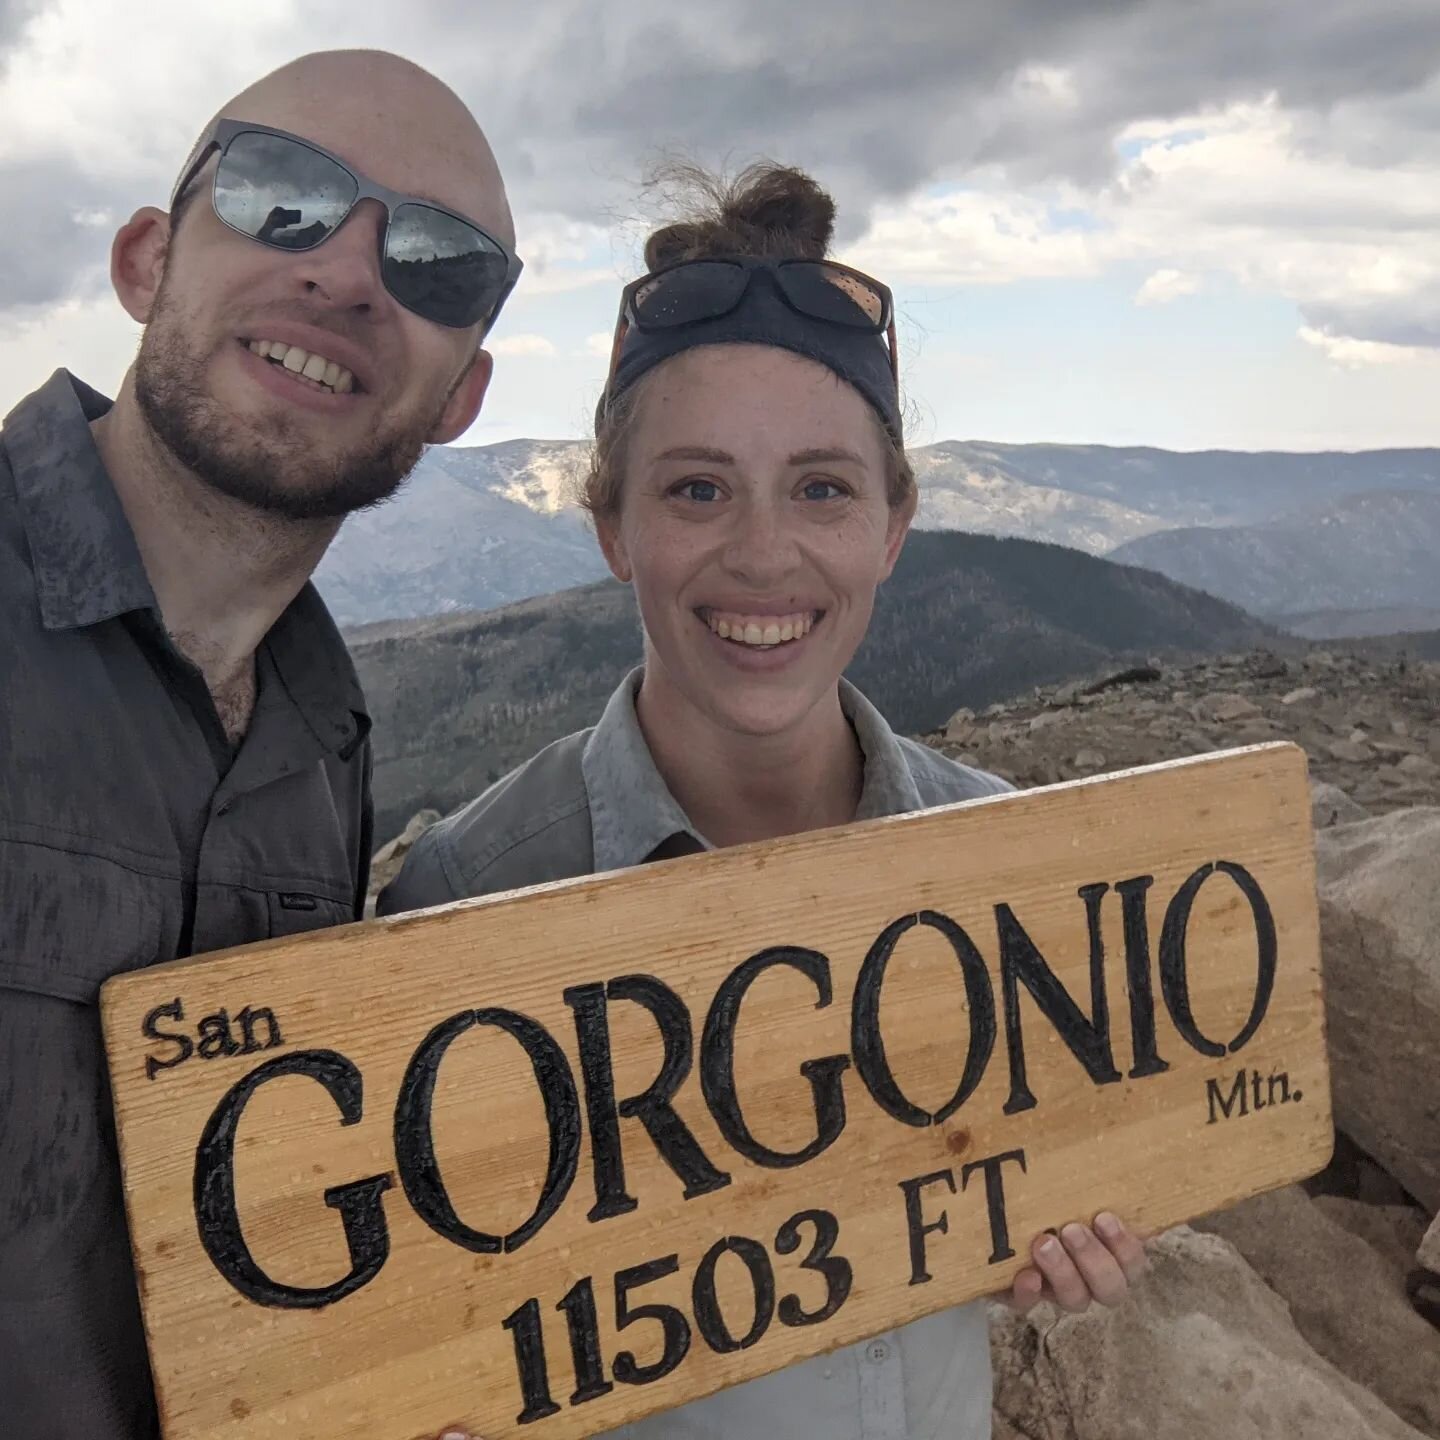 真的不想以任何其他方式度过我的30岁生日⛰️我们成功地完成了19英里的旅程，并在11,500英尺的高度登顶了圣戈尔戈尼奥!这是我最长的一次远足，也是最高的一次登顶。啊，真是累人。但绝对不可思议。